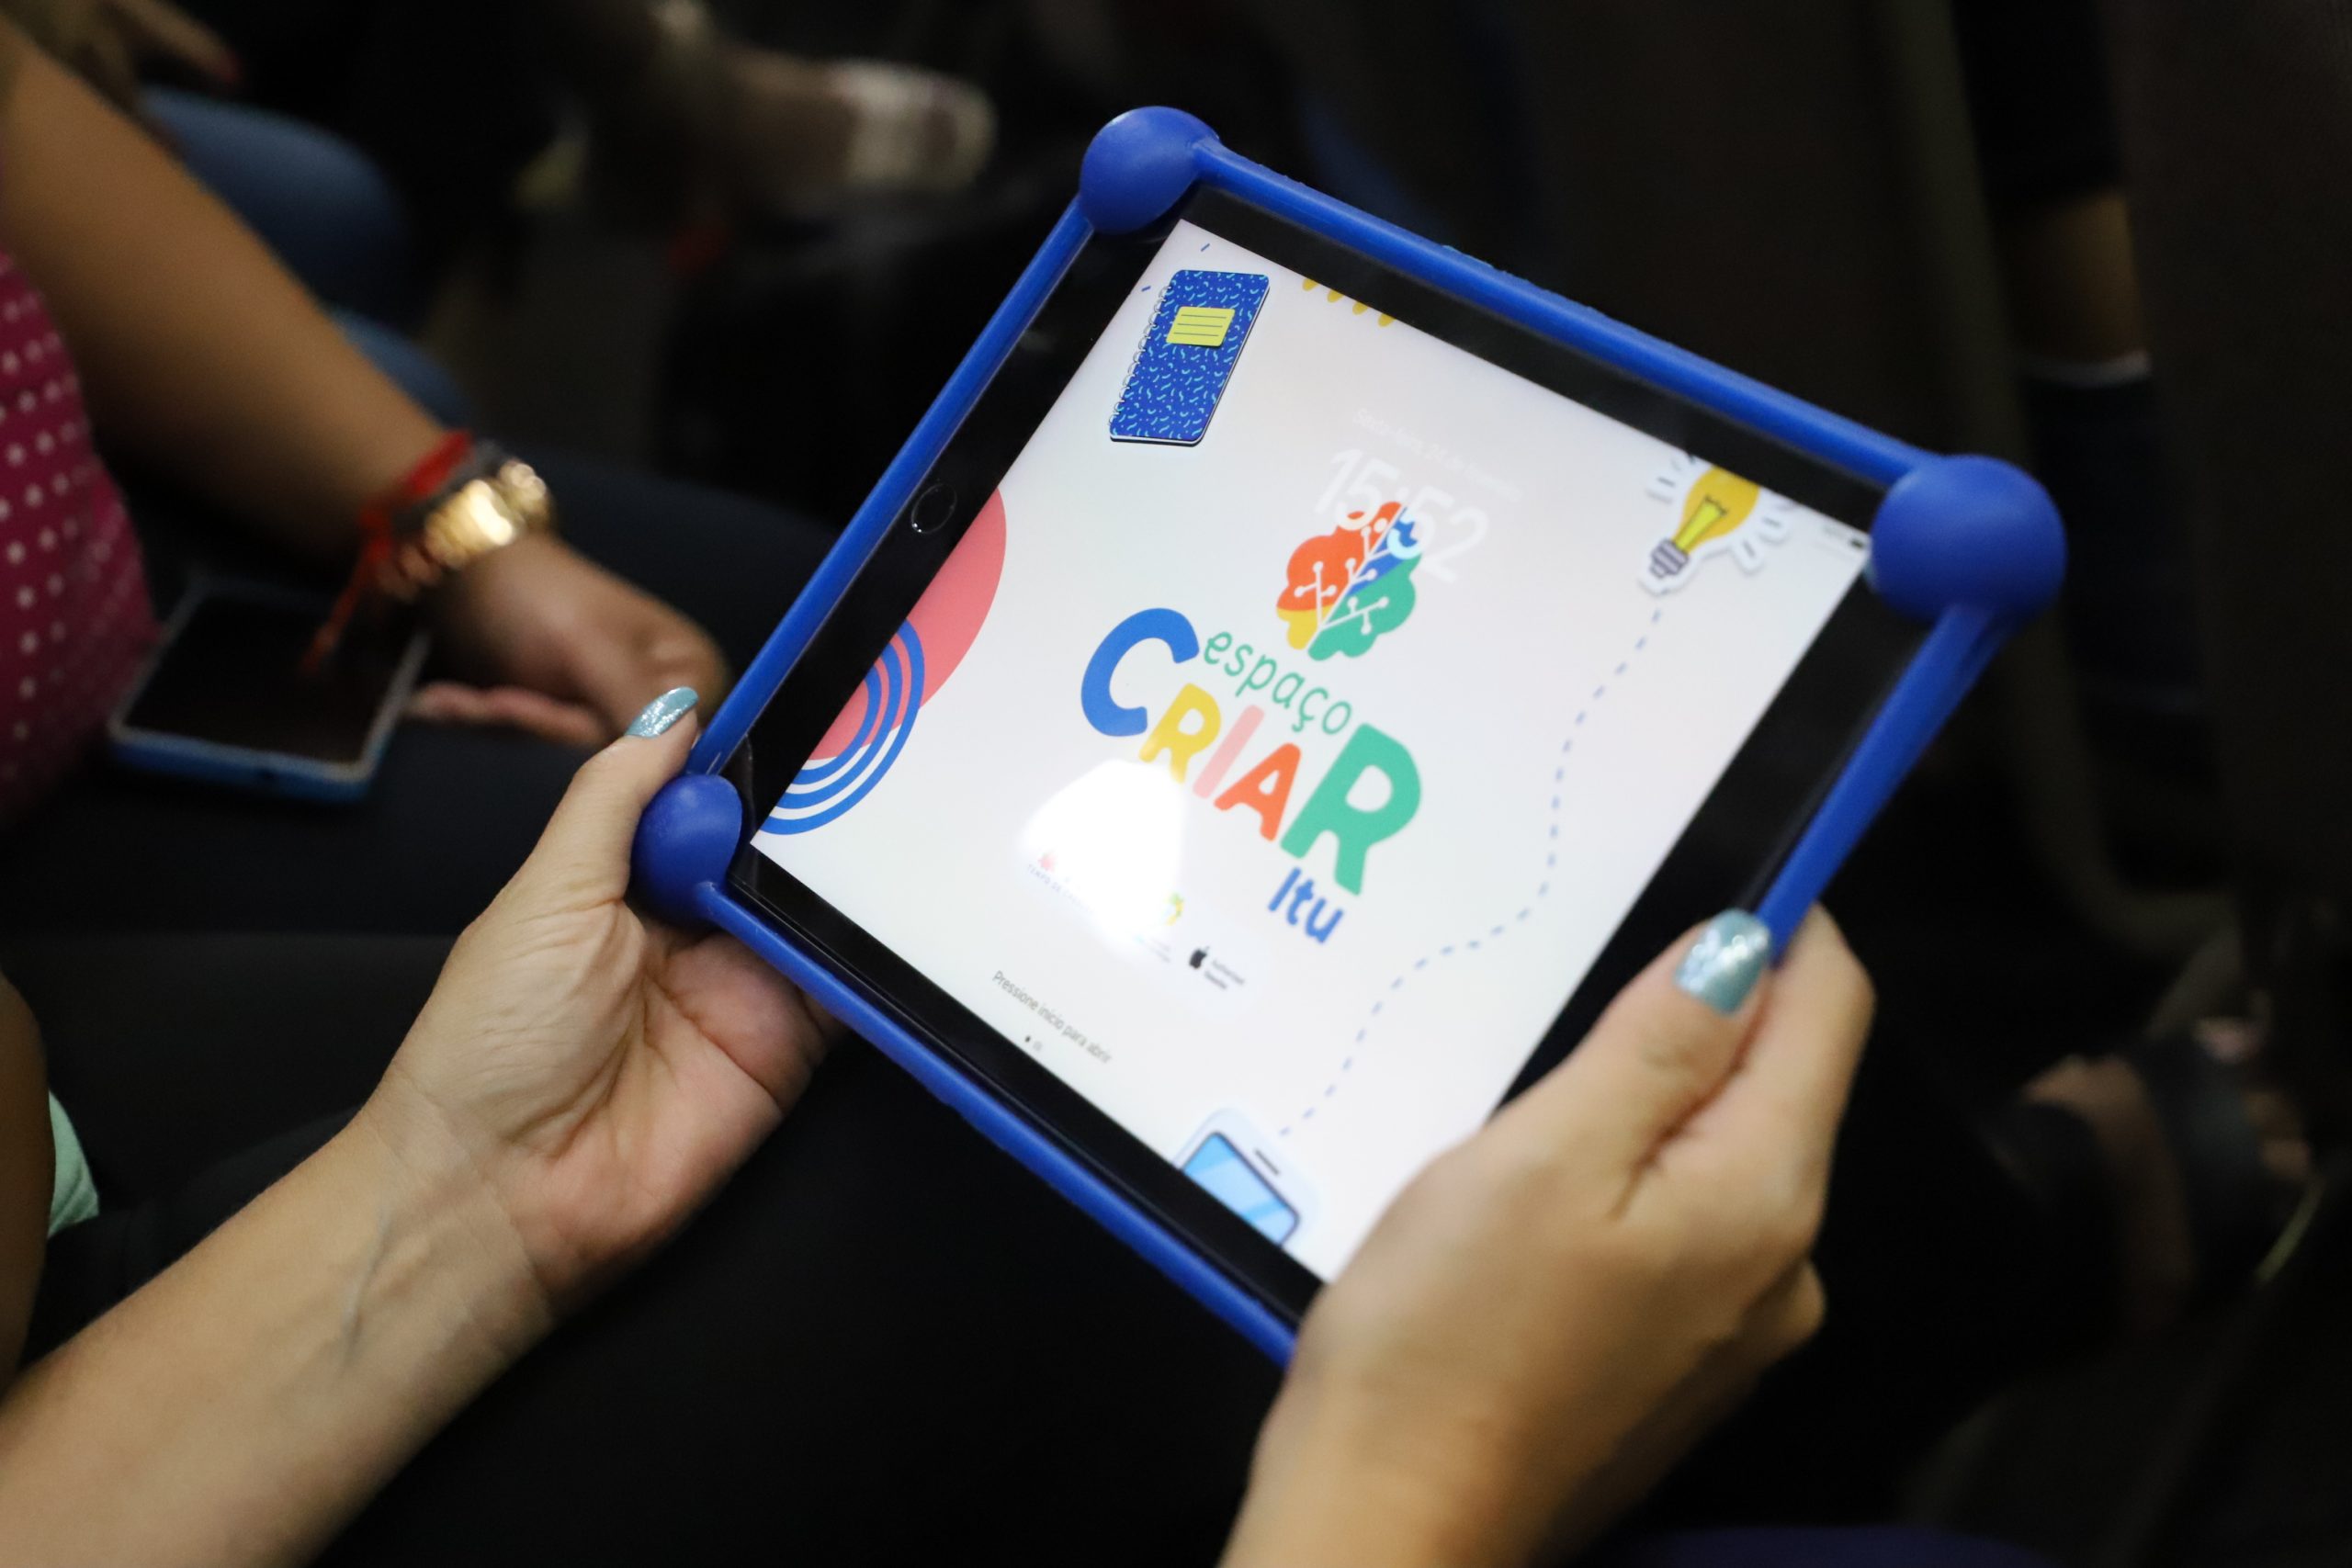 Imagem colorida mostra as mãos de uma pessoa segurando um tablet.